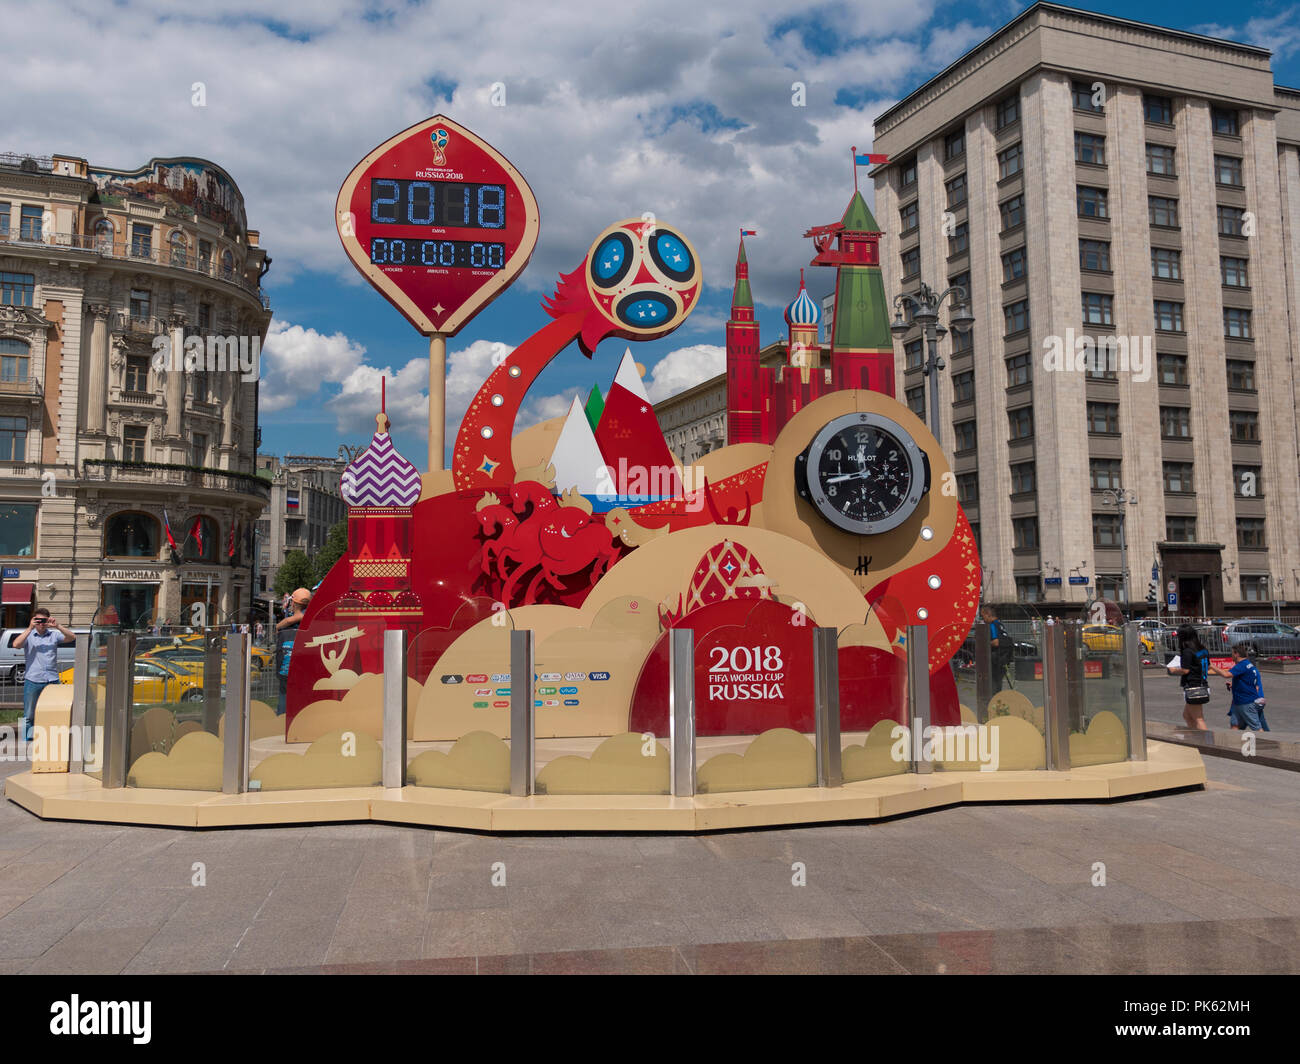 Moskau Russland - 20. JUNI 2018: eine Uhr mit einem Countdown der Tage, Stunden und Minuten bis zum Start der FIFA WM 2018 in Russland an der Manege Square in der Nähe von Kreml. National Hotel auf Hintergrund. Am 20. Juni 2018 in Moskau, Russland Stockfoto